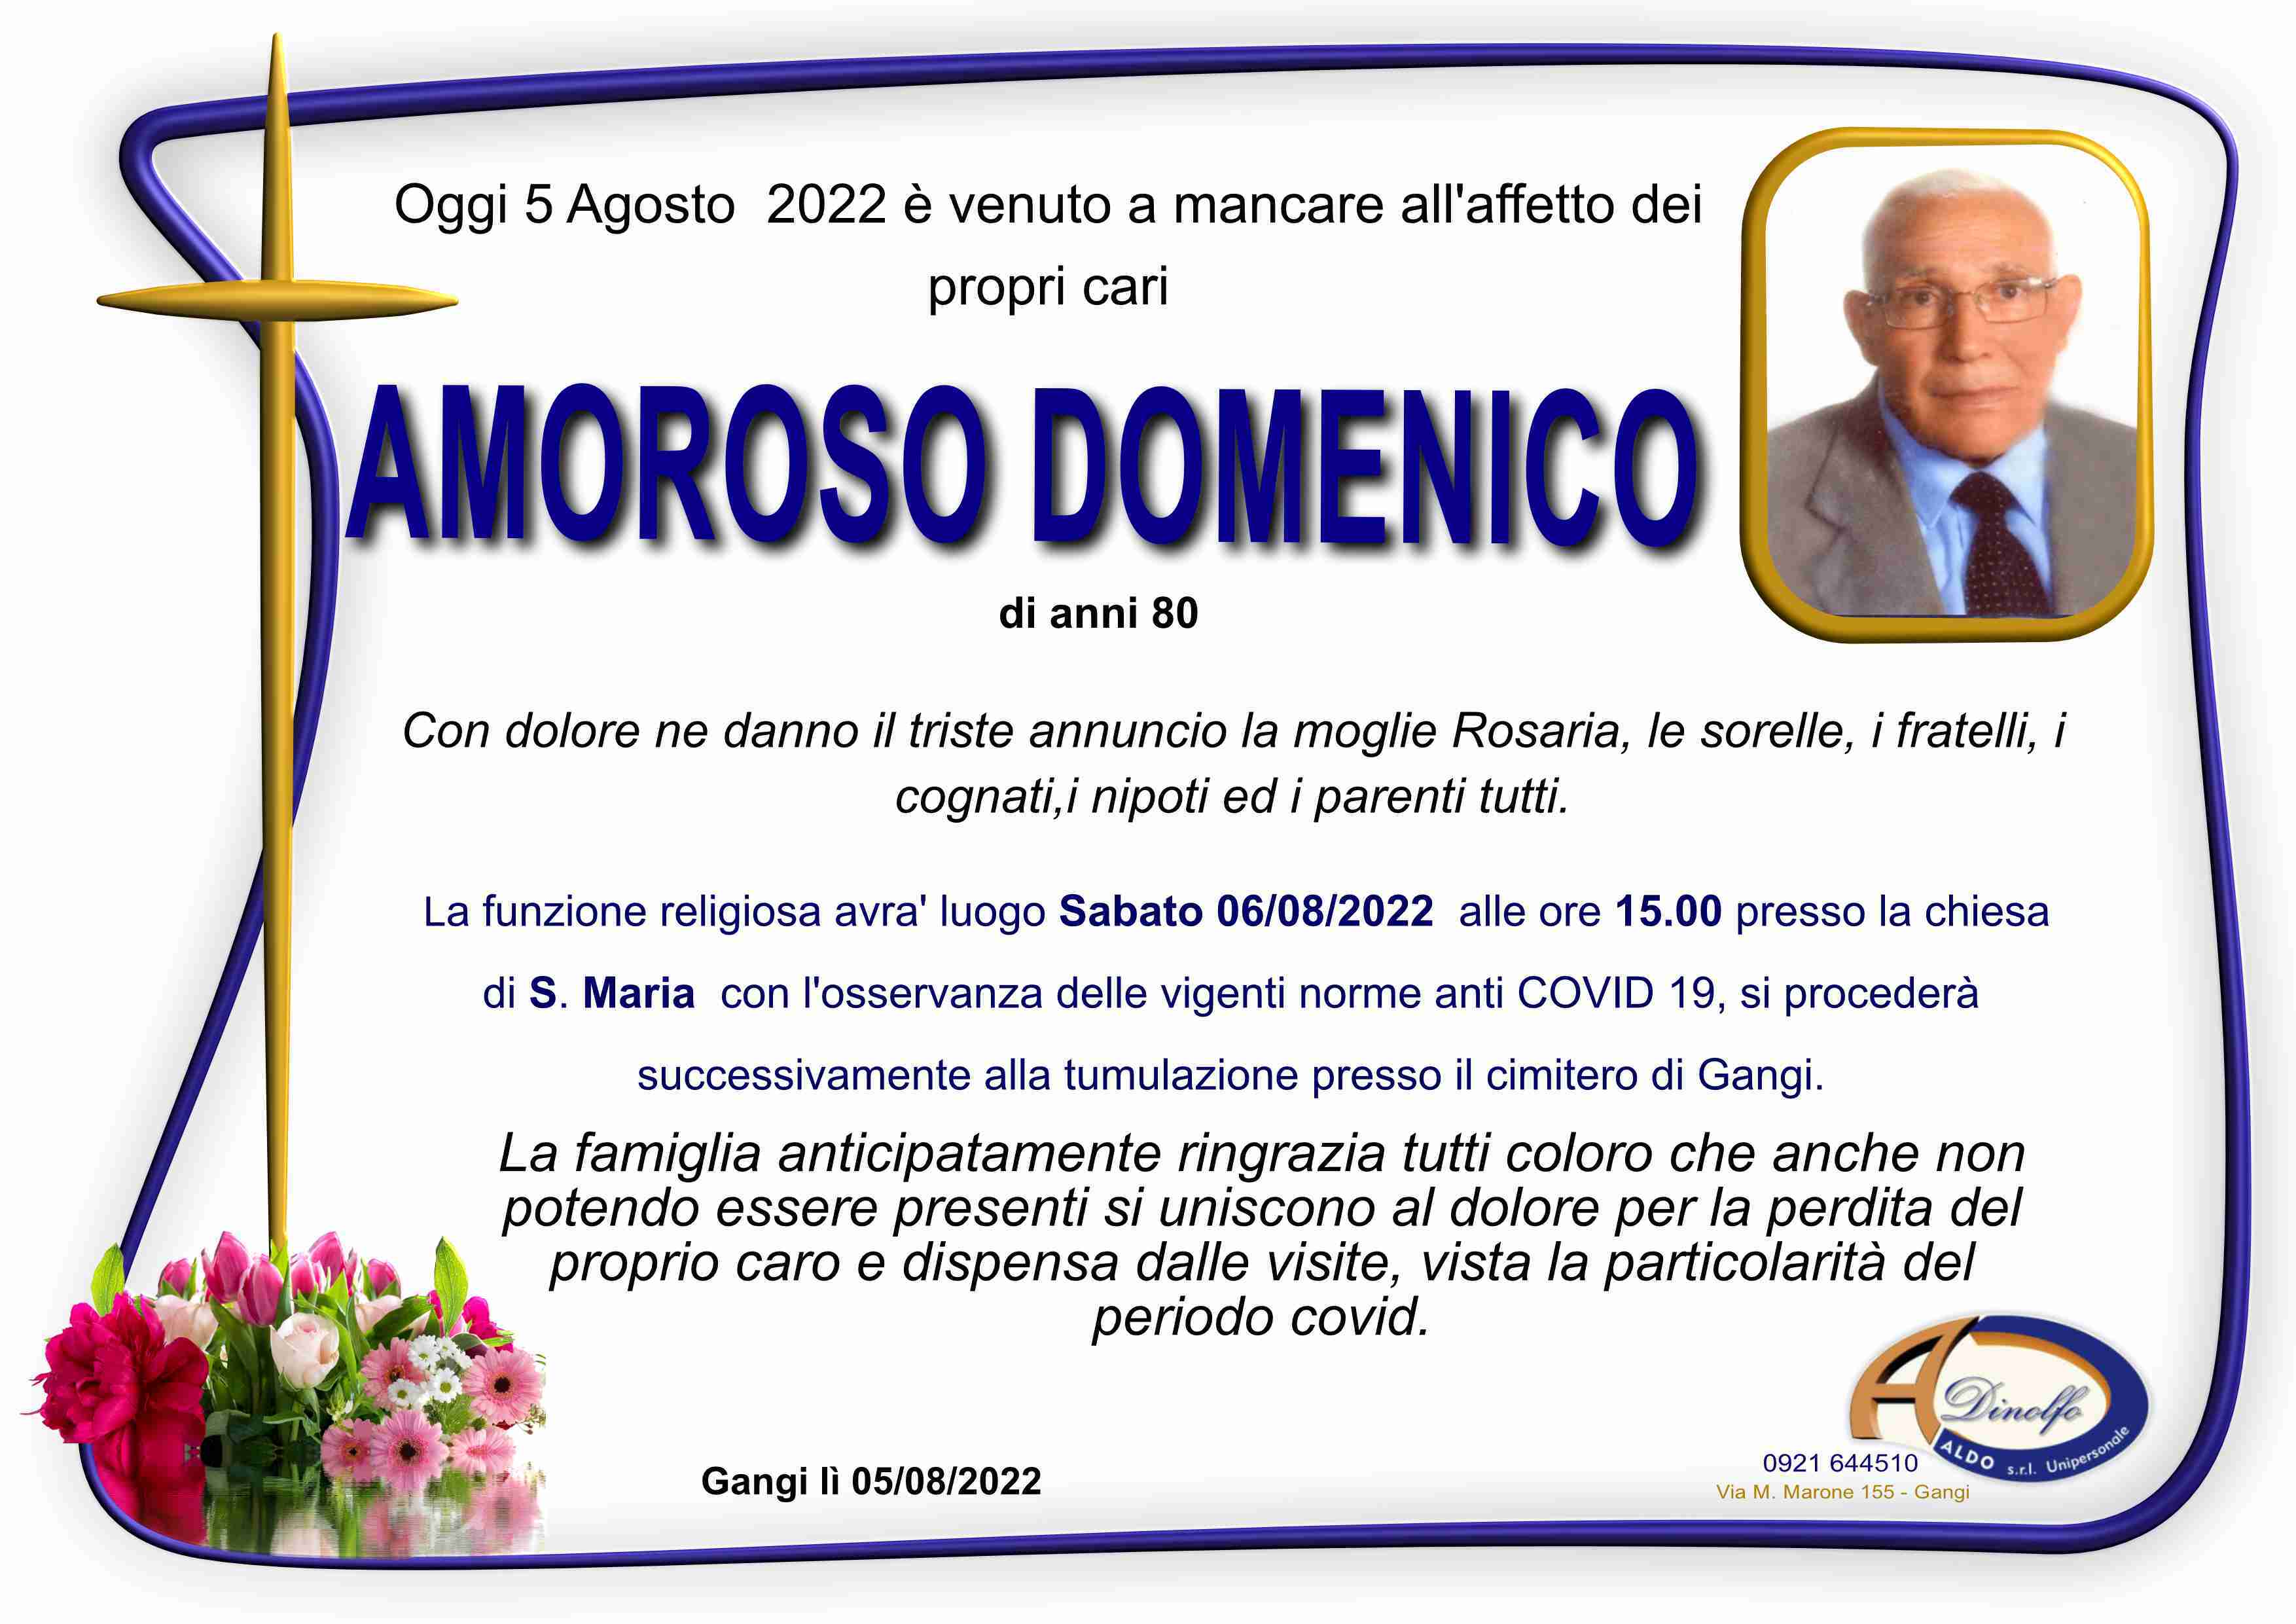 Domenico Amoroso